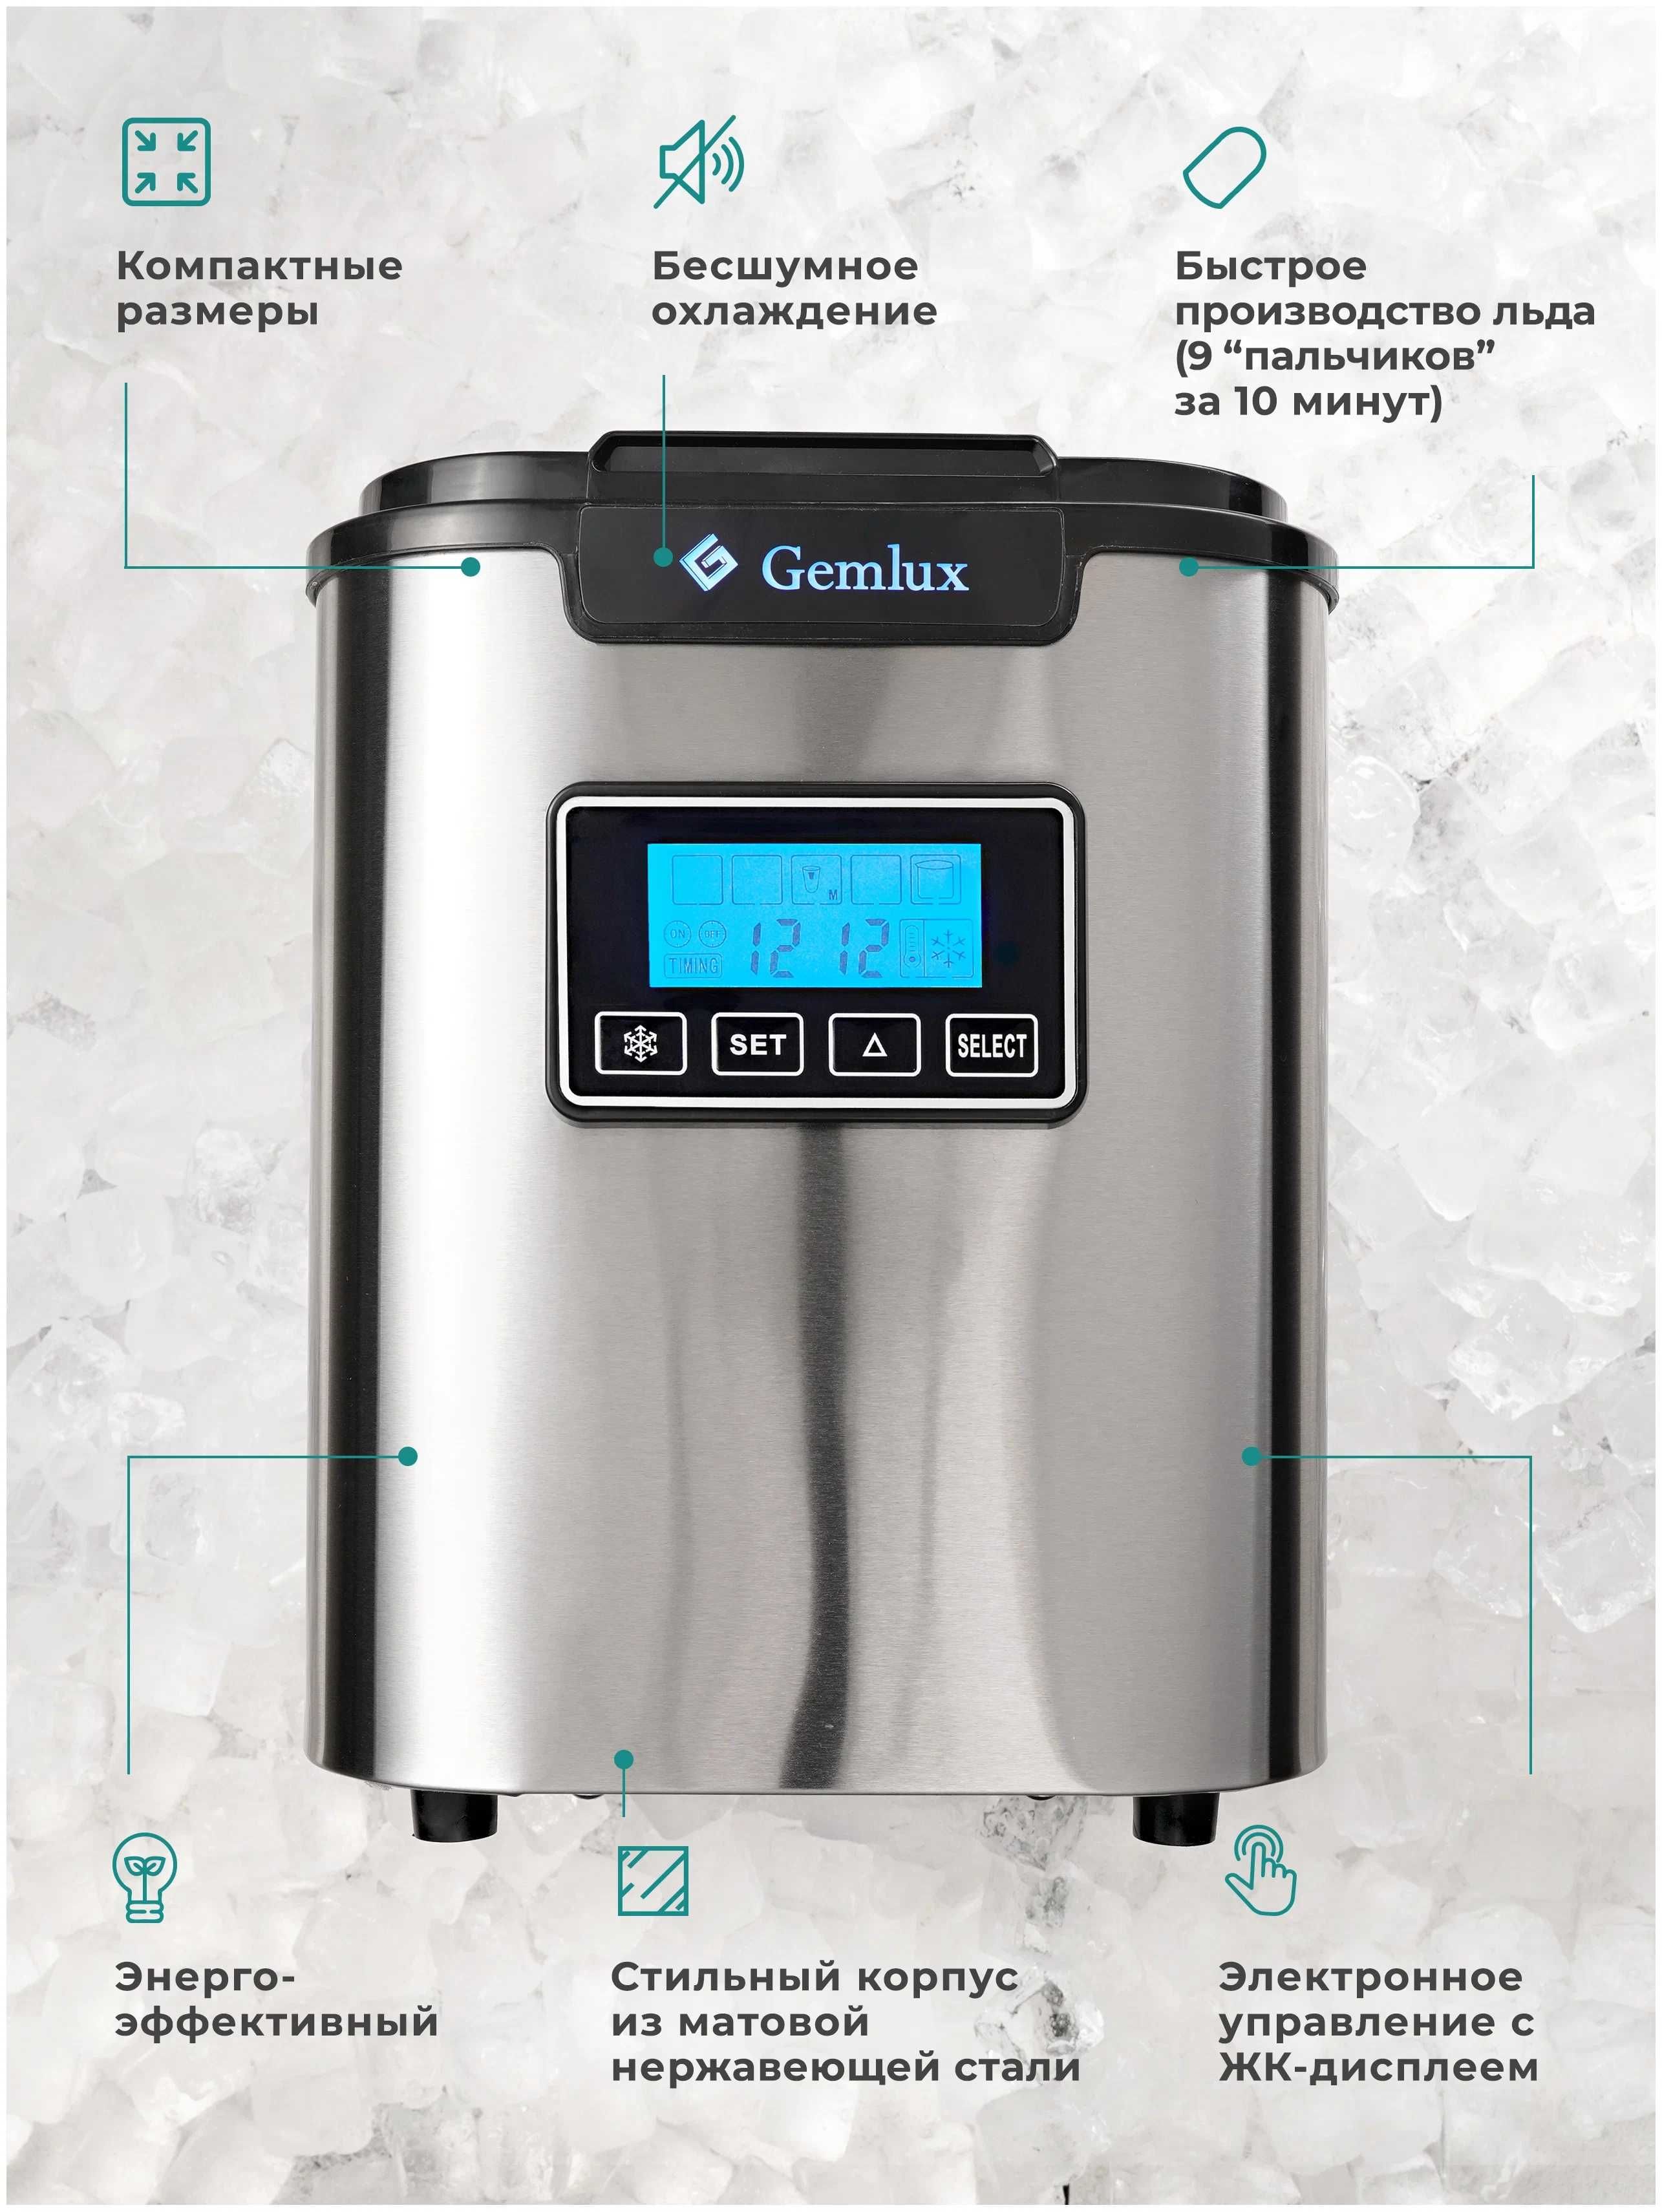 Автомобильный льдогенератор Gemlux новый в упаковке с доставкой